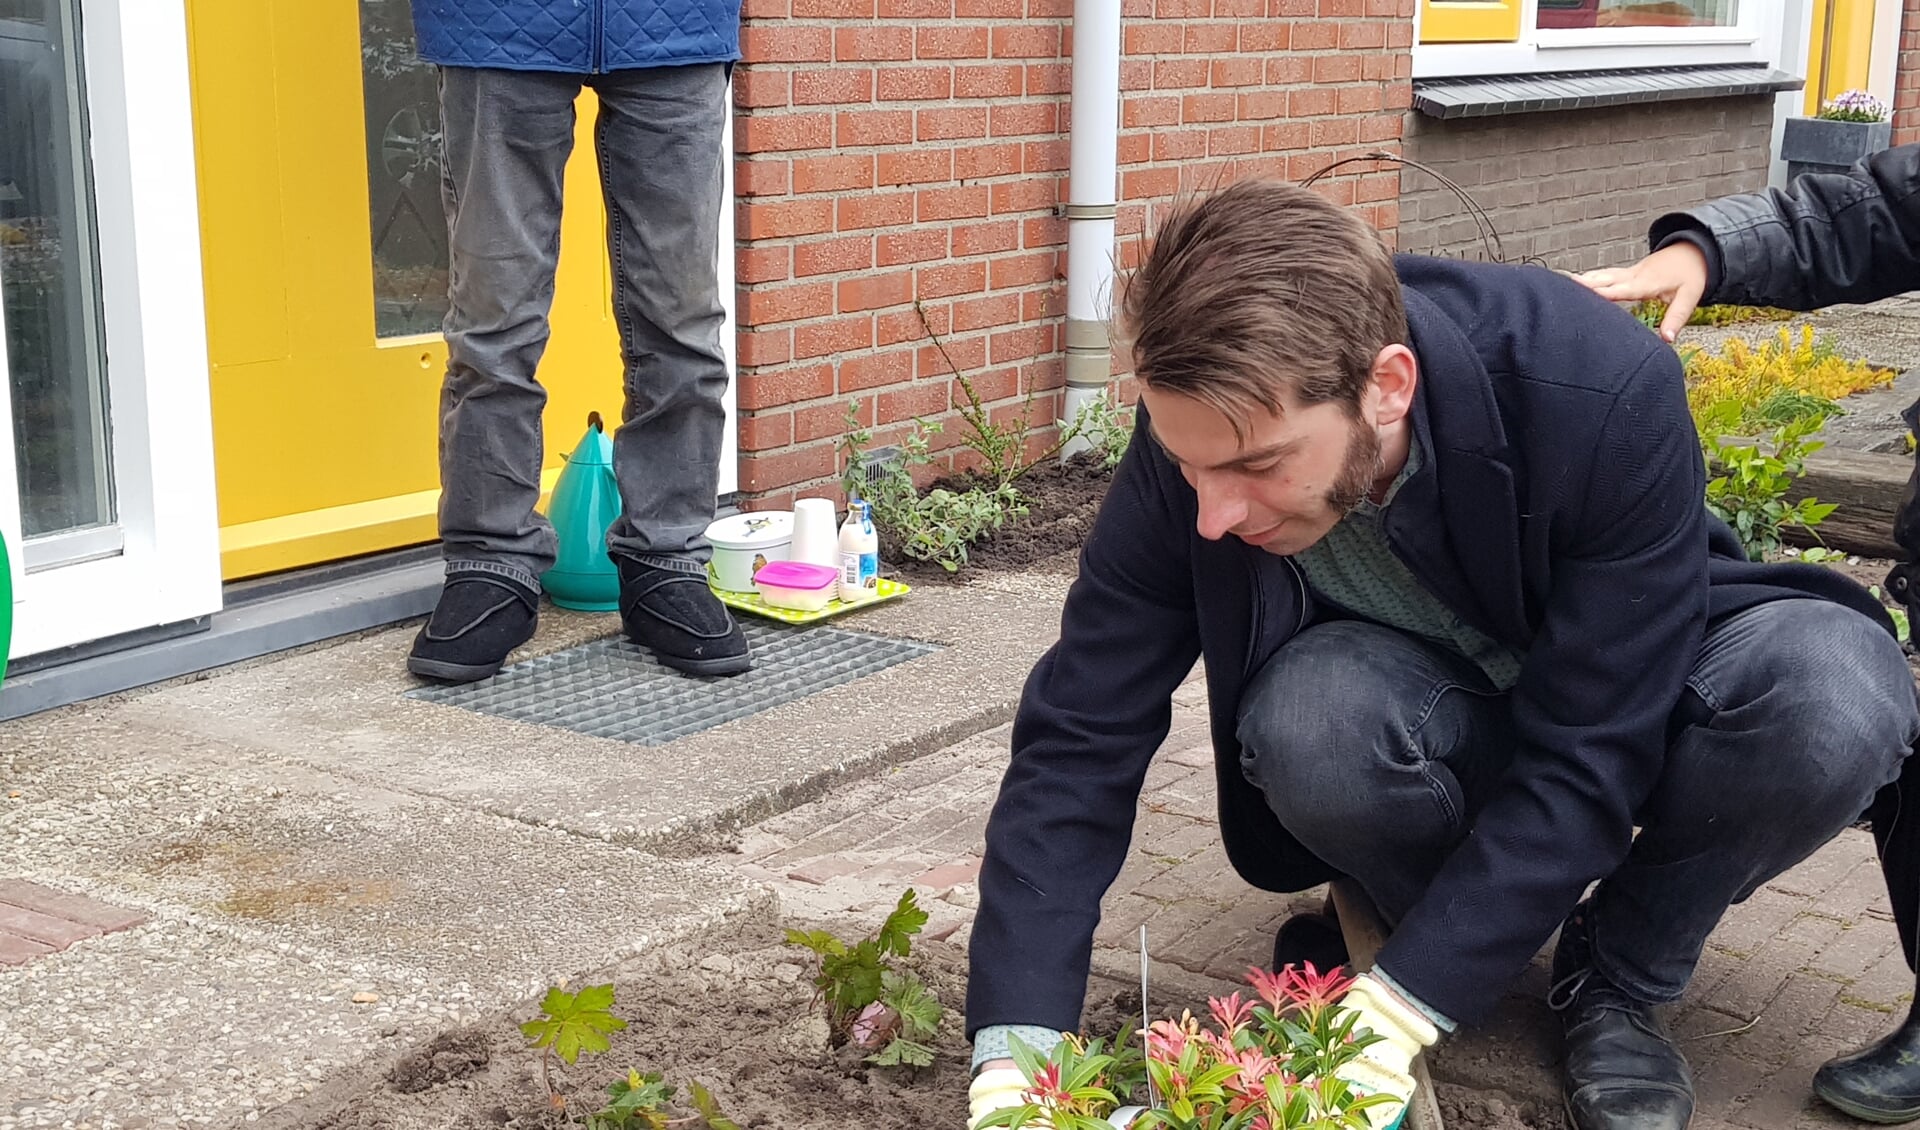 Wethouder Paul Hofman zet een plant in de tuin, als officieel startsein voor het project Sociaal Groen. Foto: Present Bronckhorst